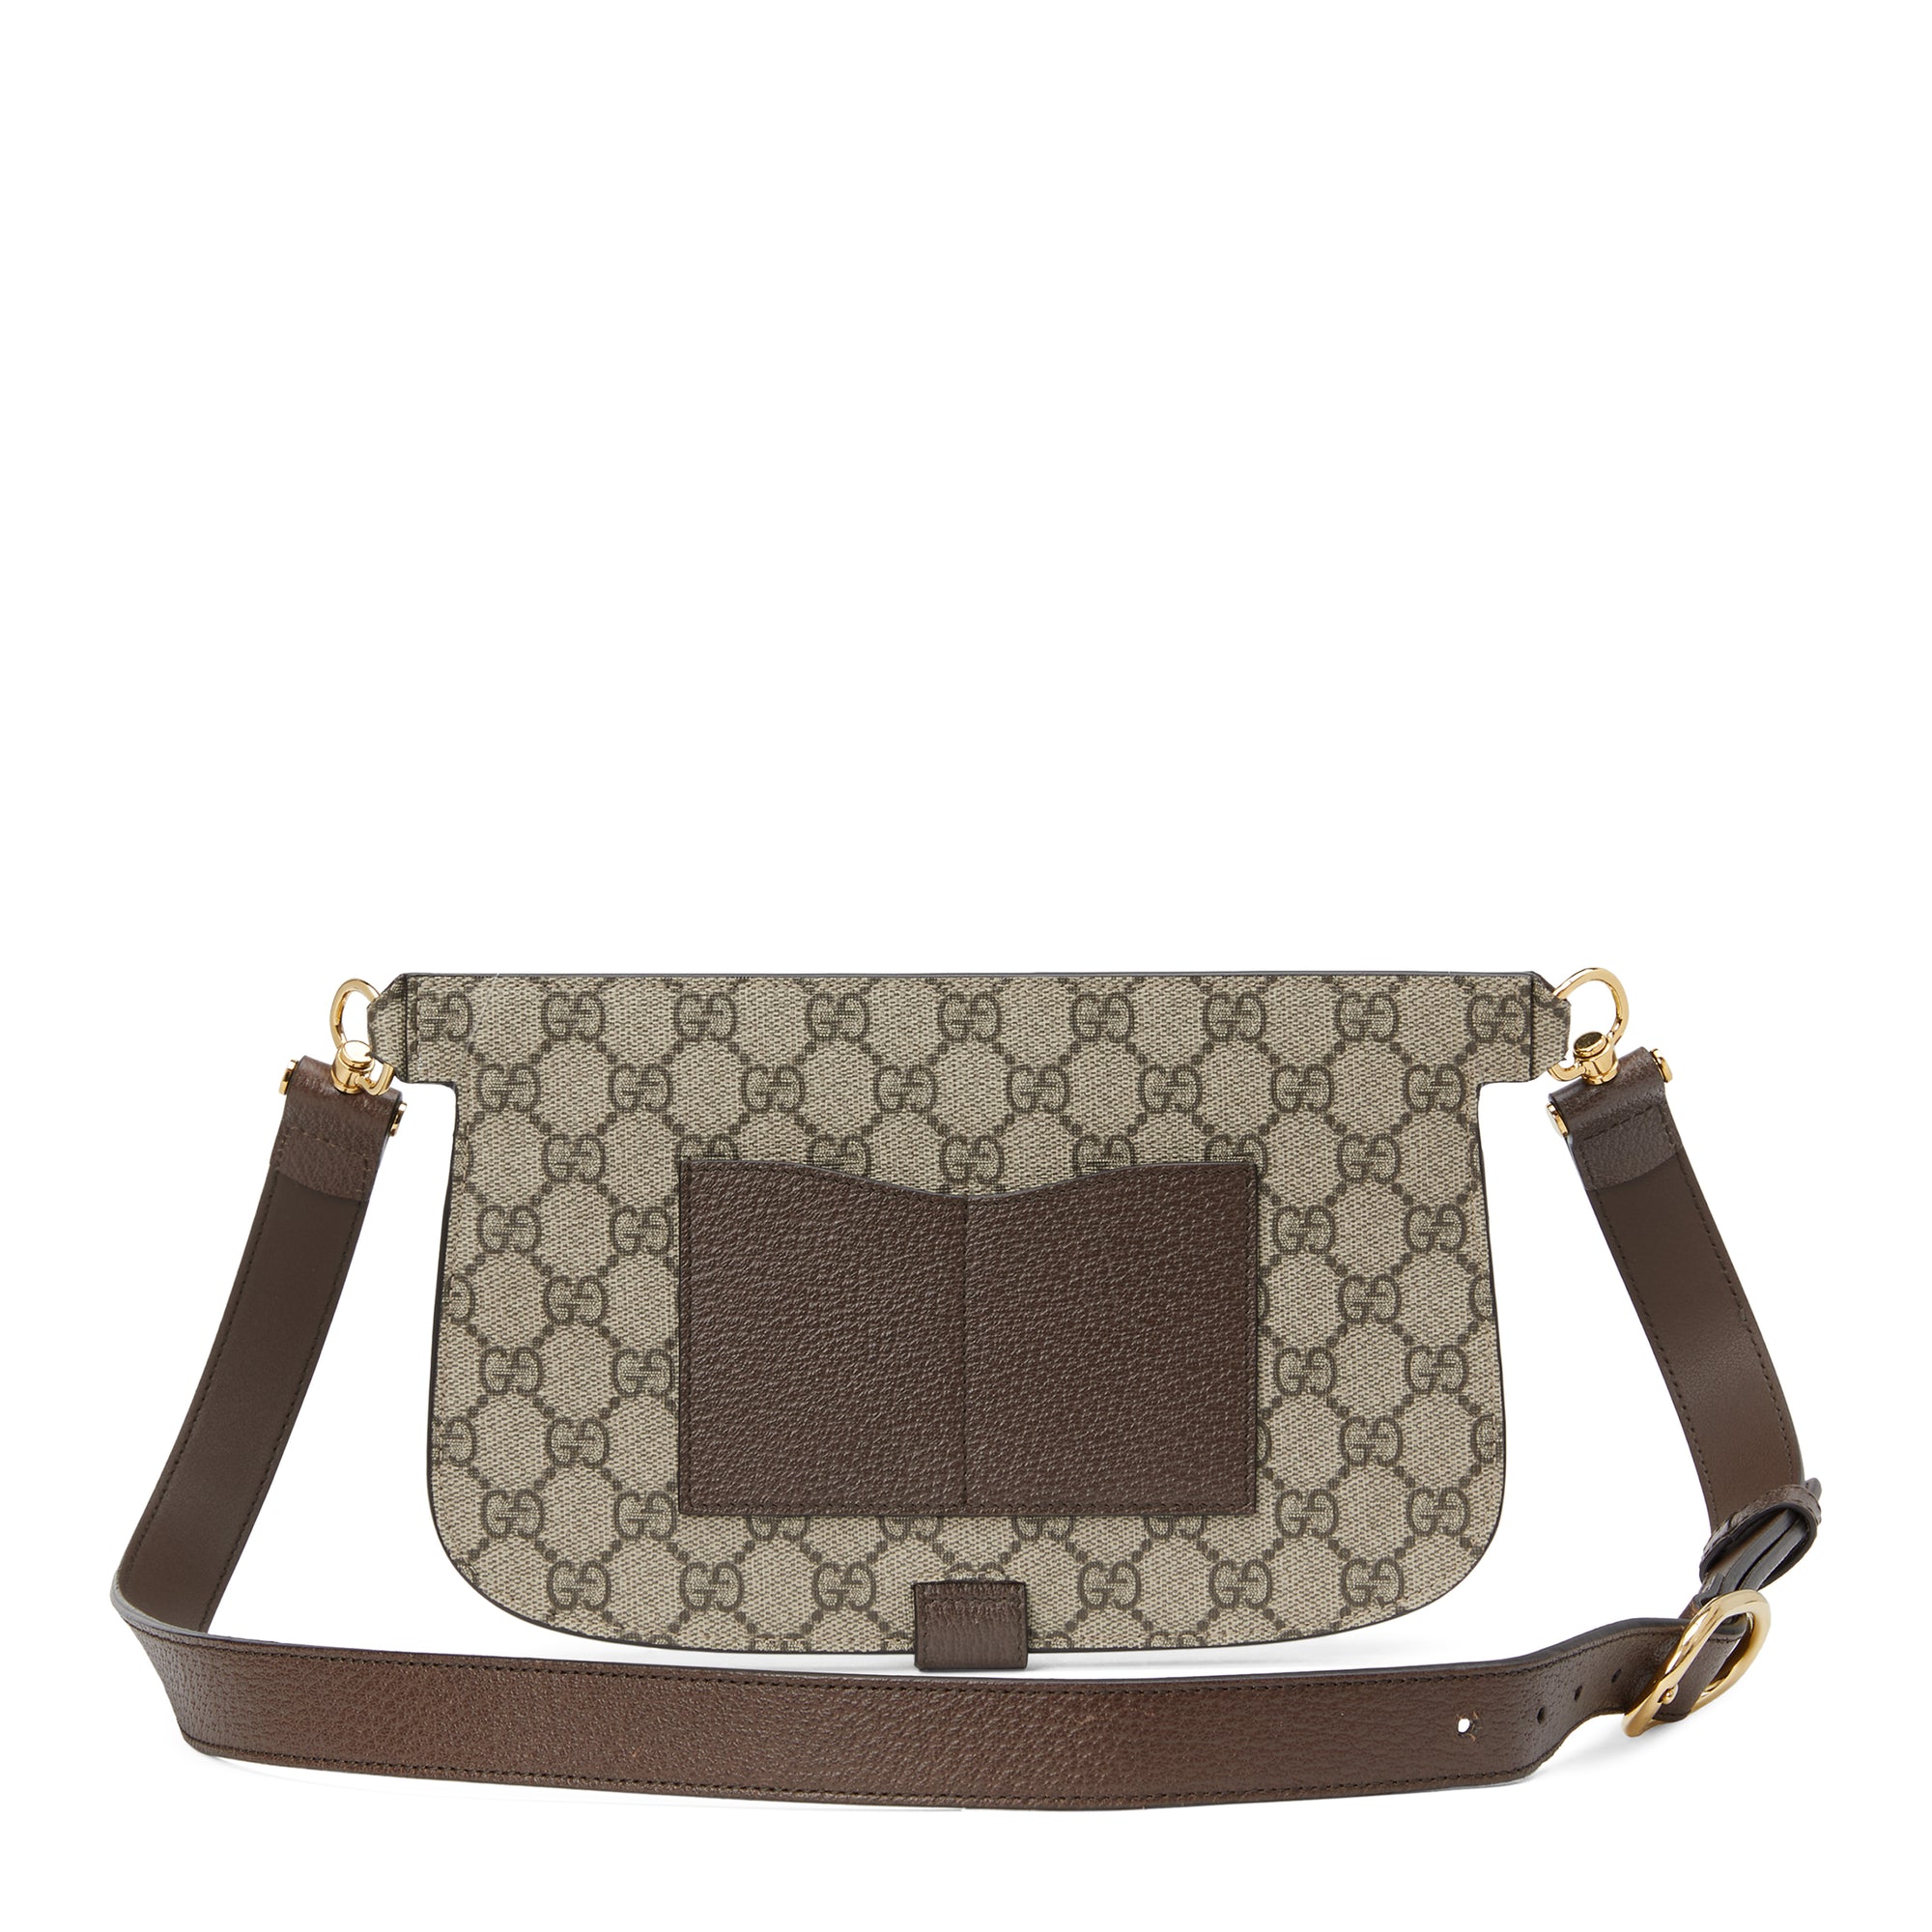 Gucci - Women’s Blondie Belt Bag - (Beige/Ebony) view 3